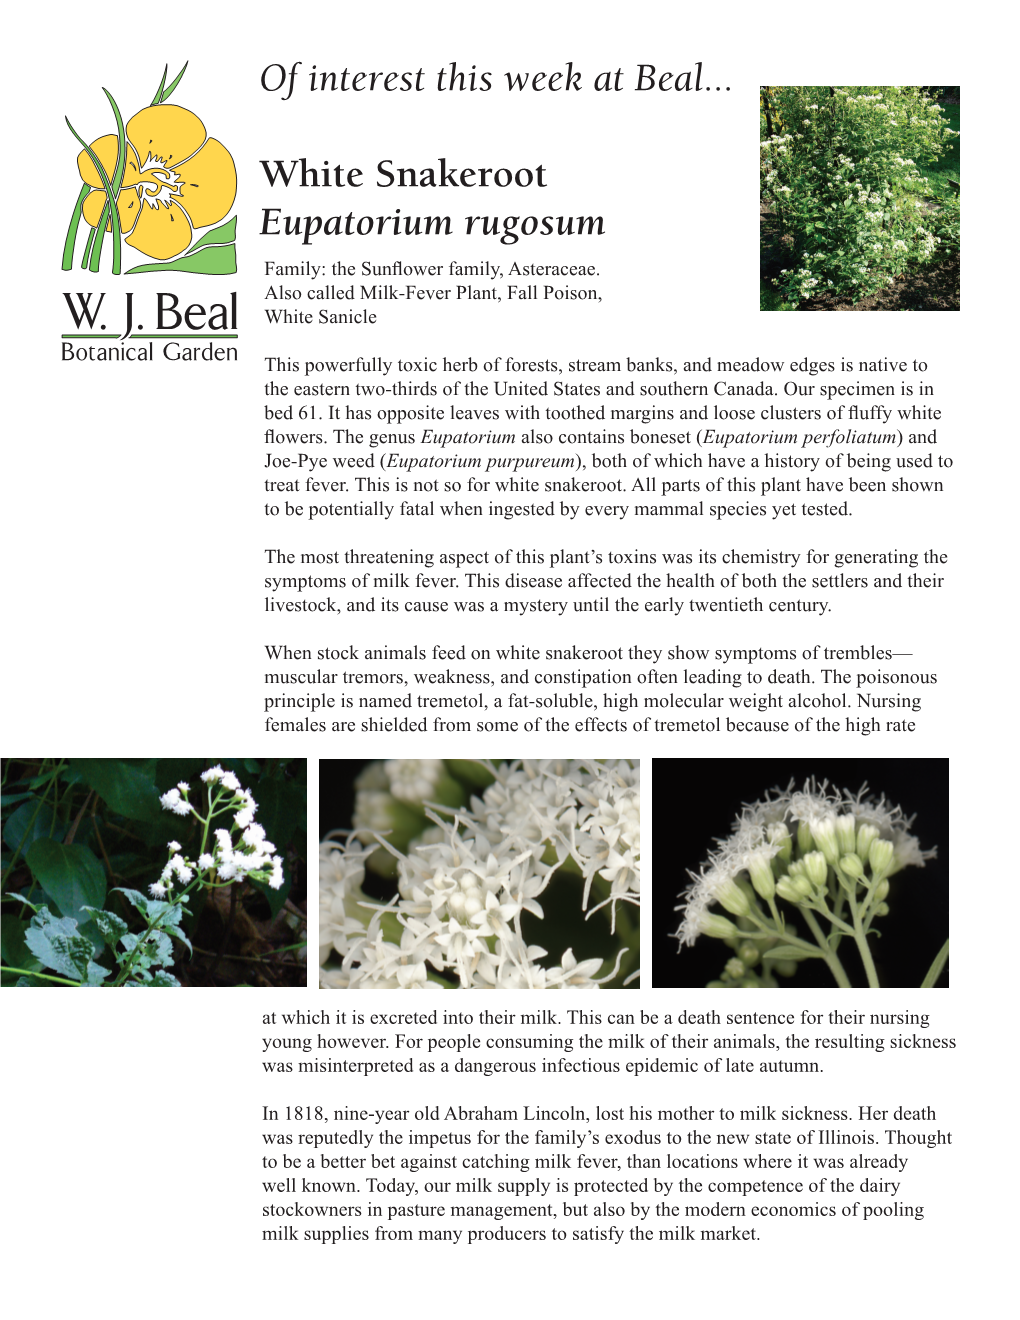 Eupatorium Rugosum, White Snakeroot